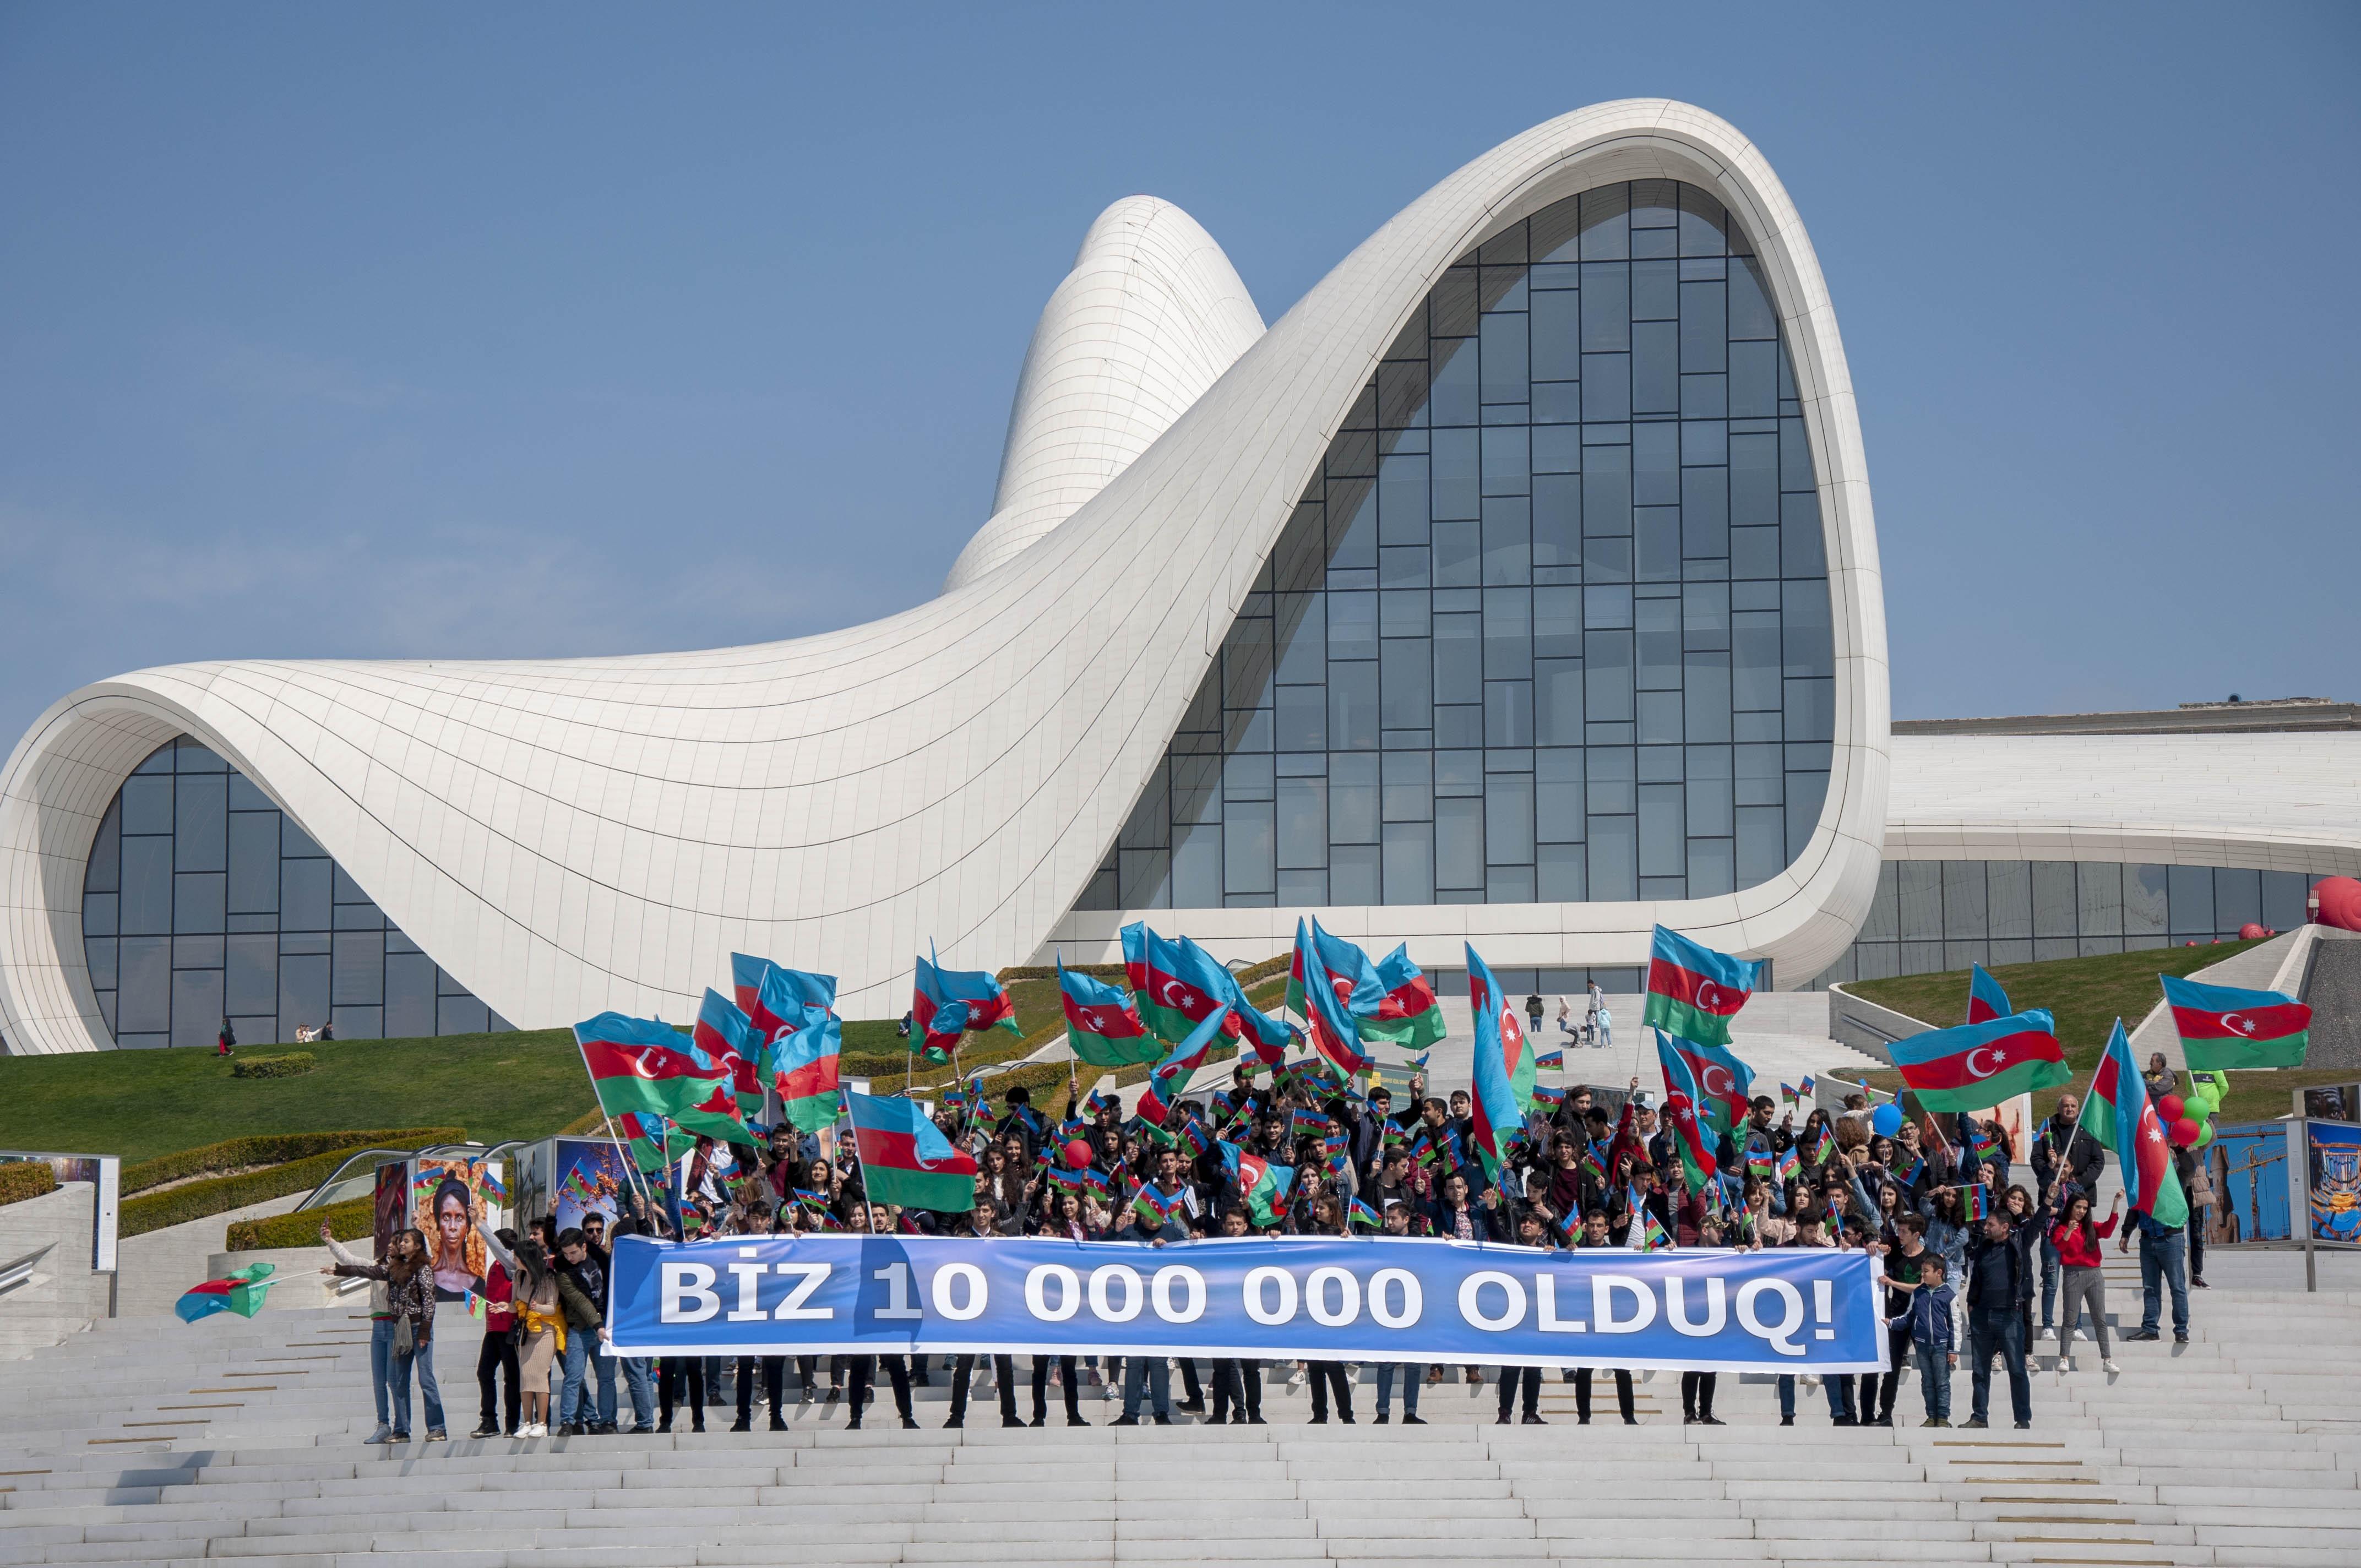 Населенный азербайджан. Население Азербайджана 2021. Население Баку 2021 численность. Население Азербайджана 2021 численность населения. Баку Азербайджан население.